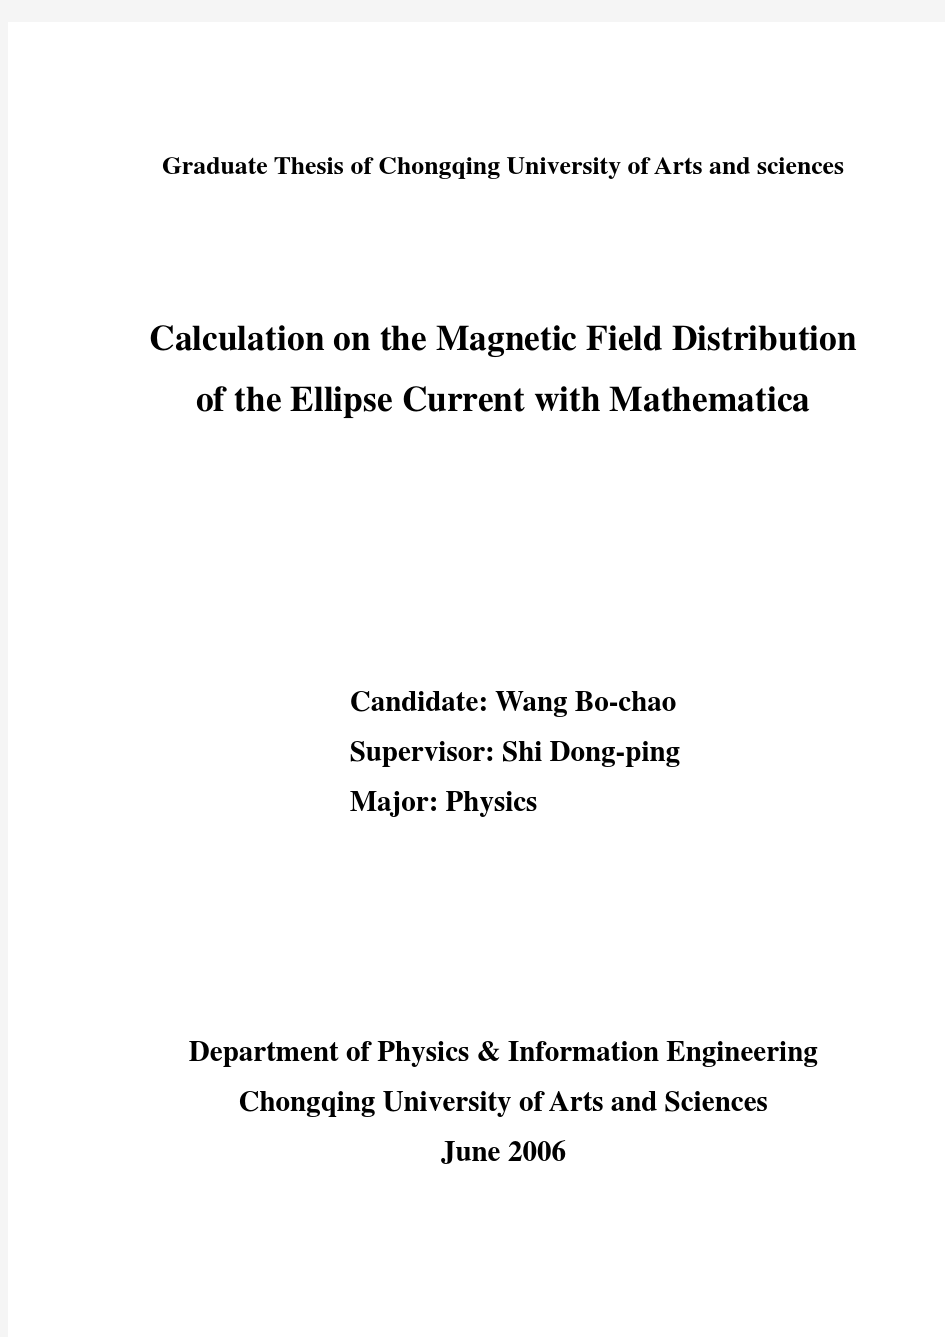 用Mathematica计算椭圆形电流的磁场分布